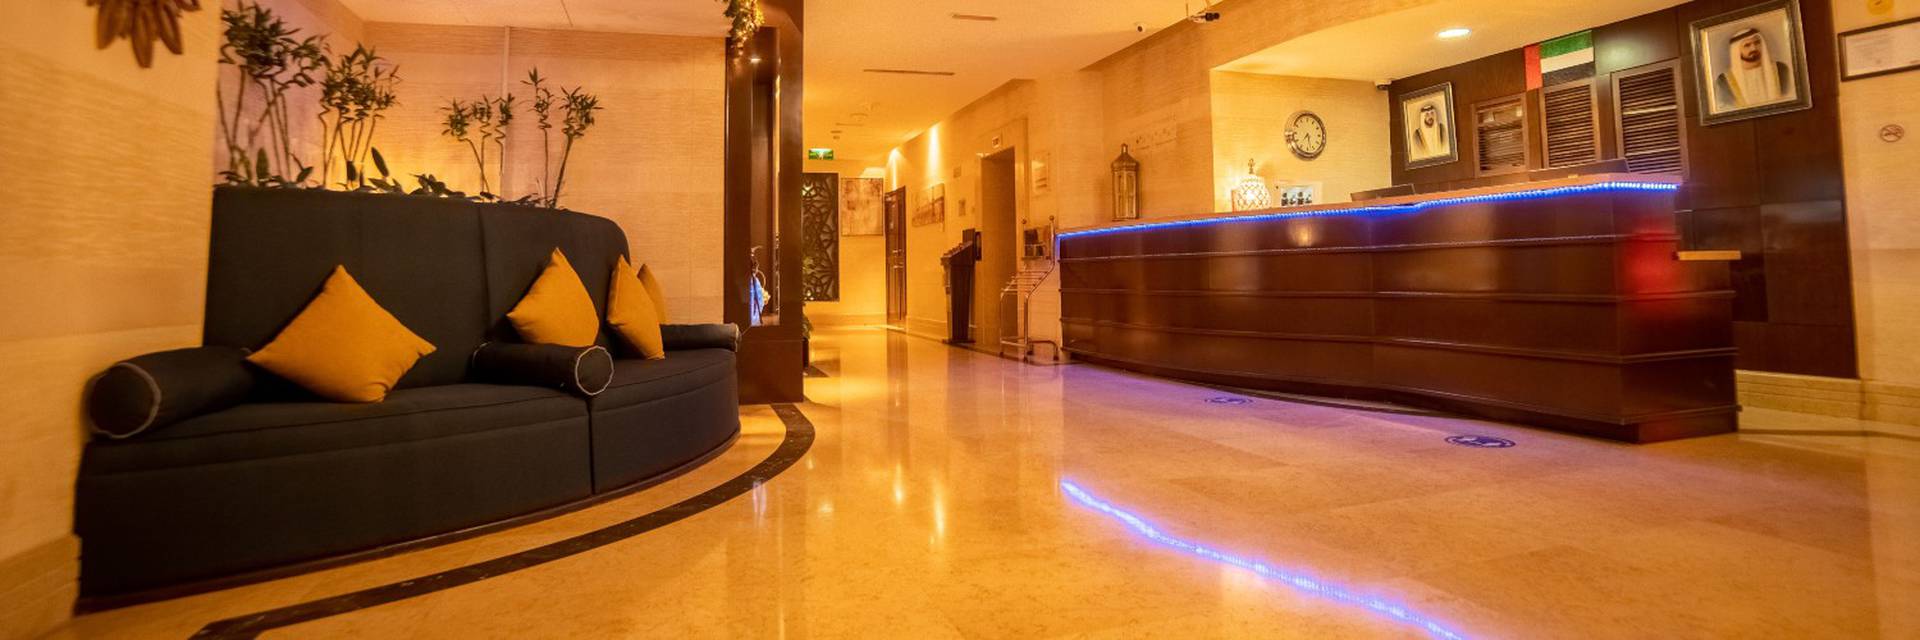 المراجعات شقق سها الفندقية دبي